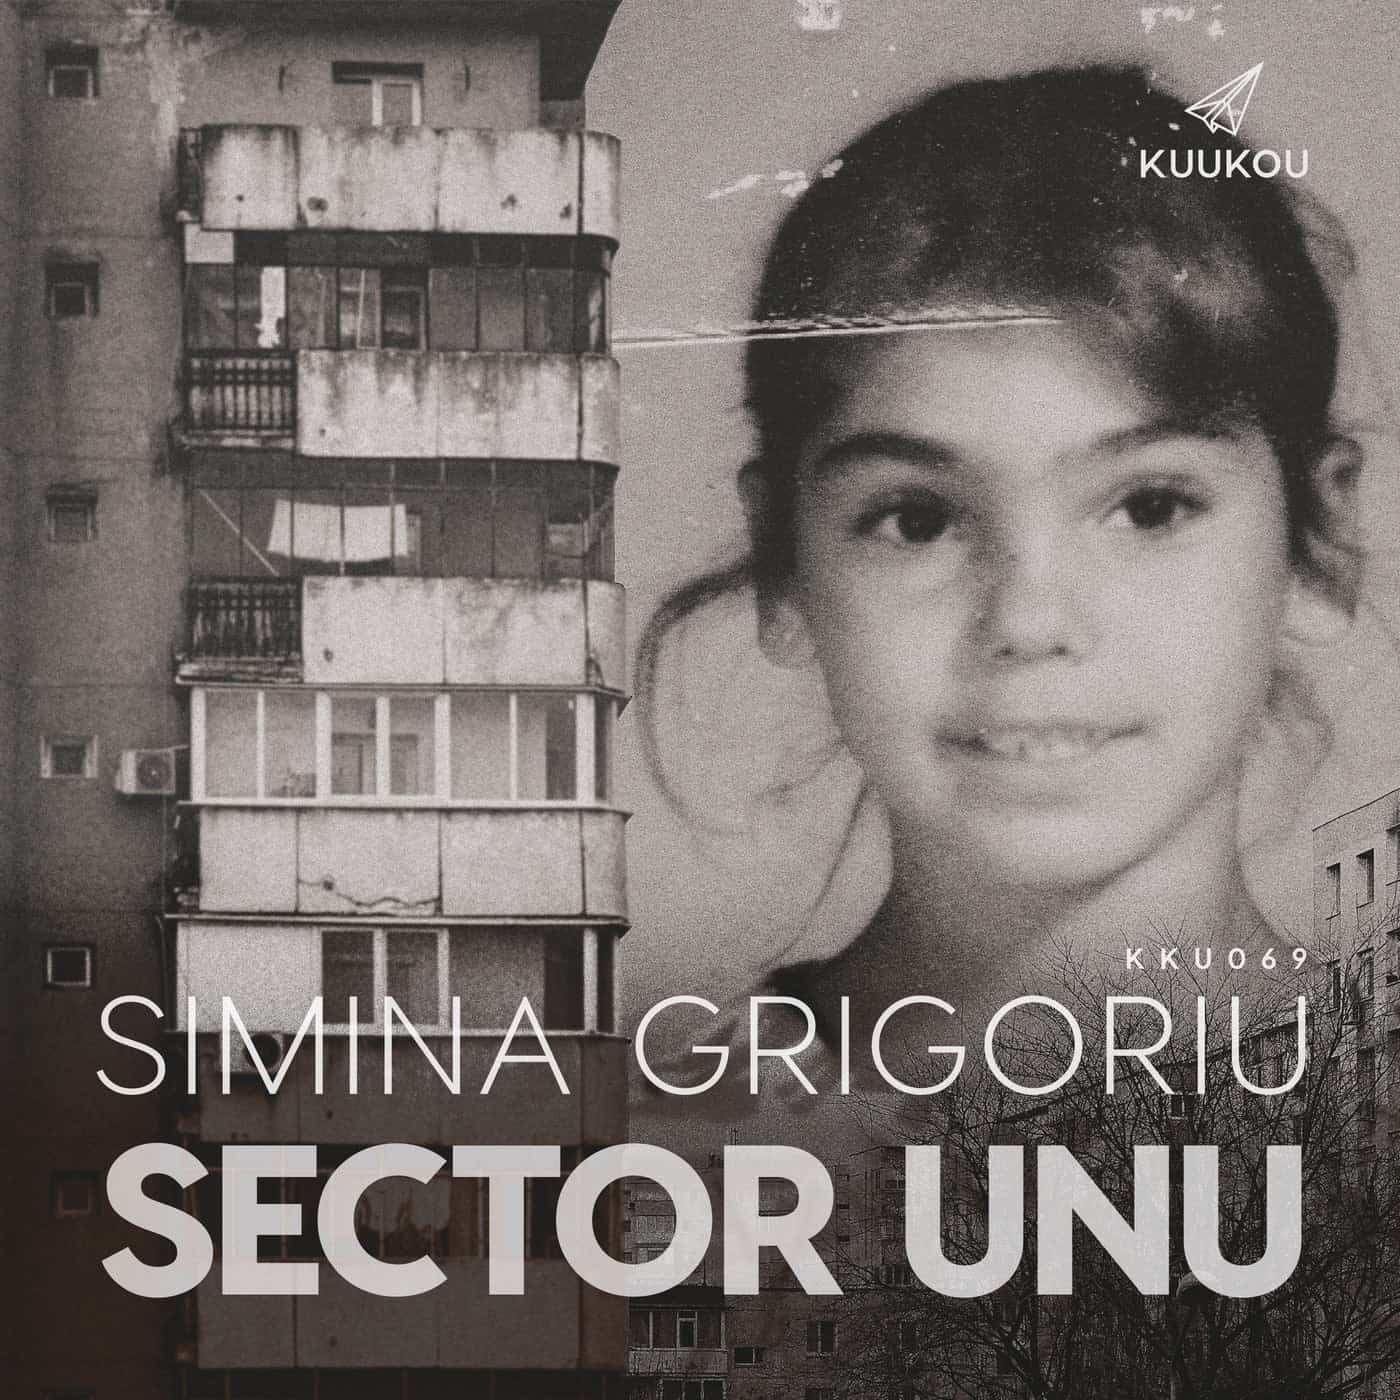 image cover: Simina Grigoriu - Sector Unu / KKU069